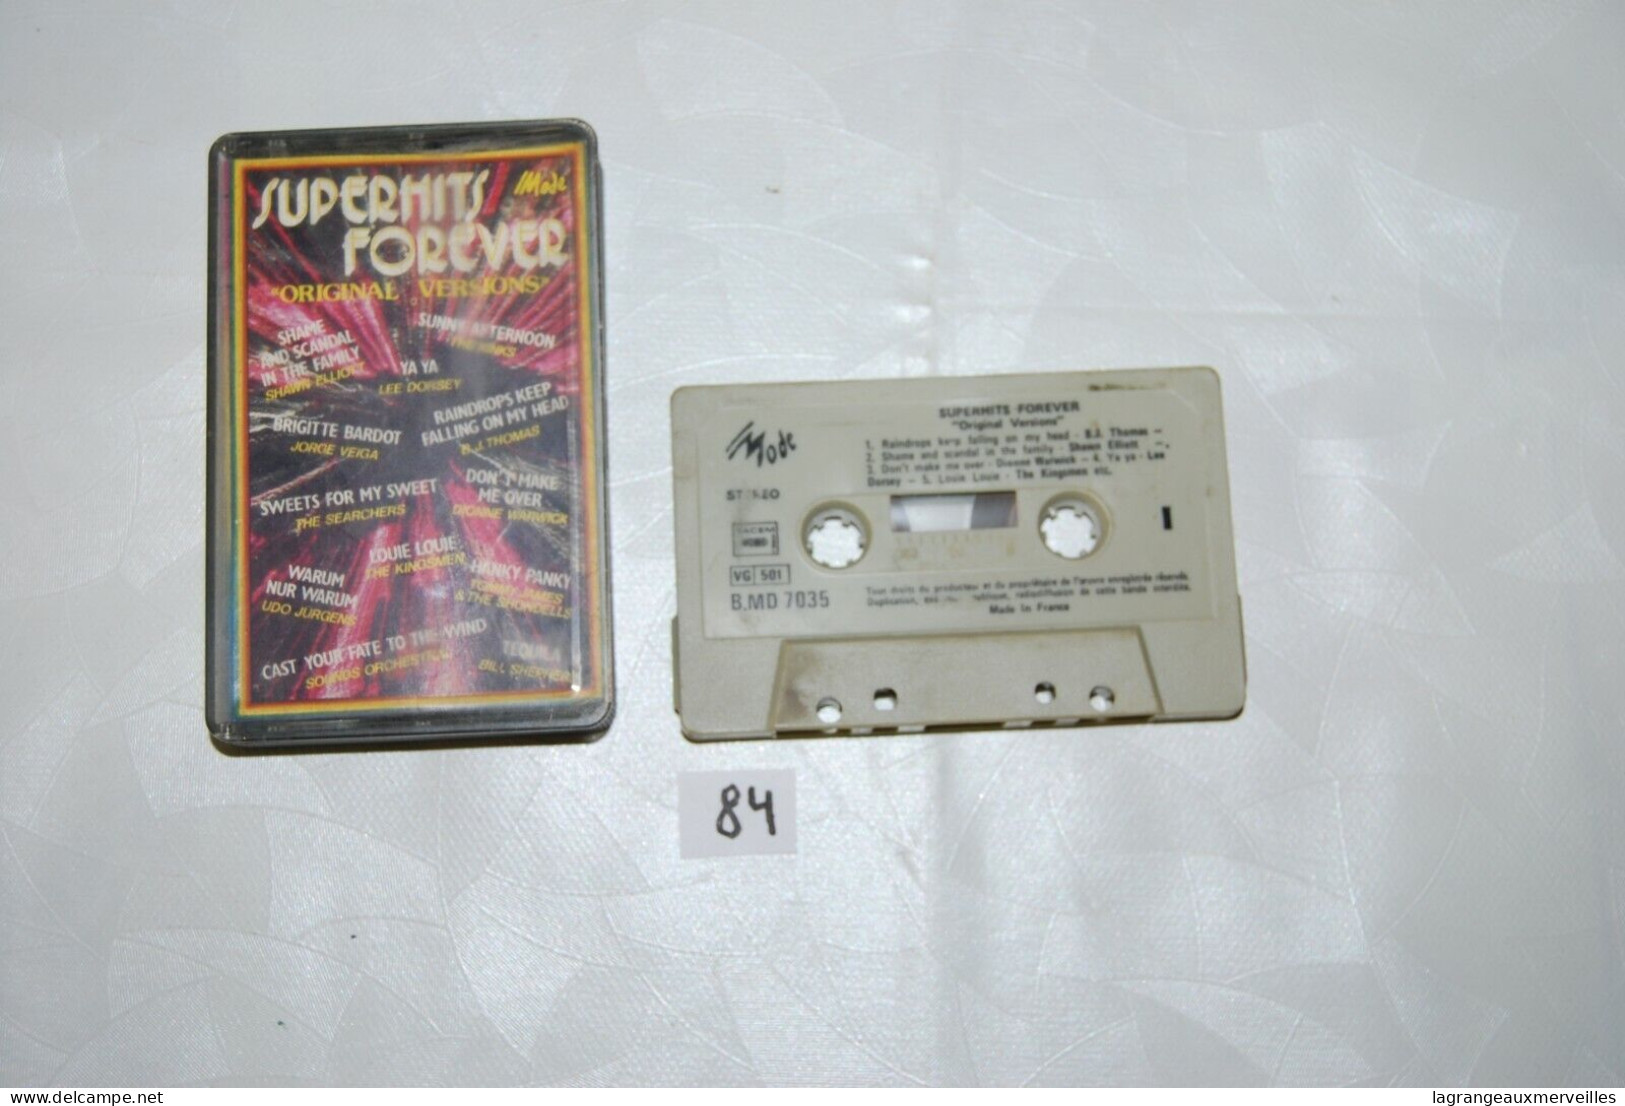 C84 K7 Cassette Audio - Super Hits Forever - Casette Beta